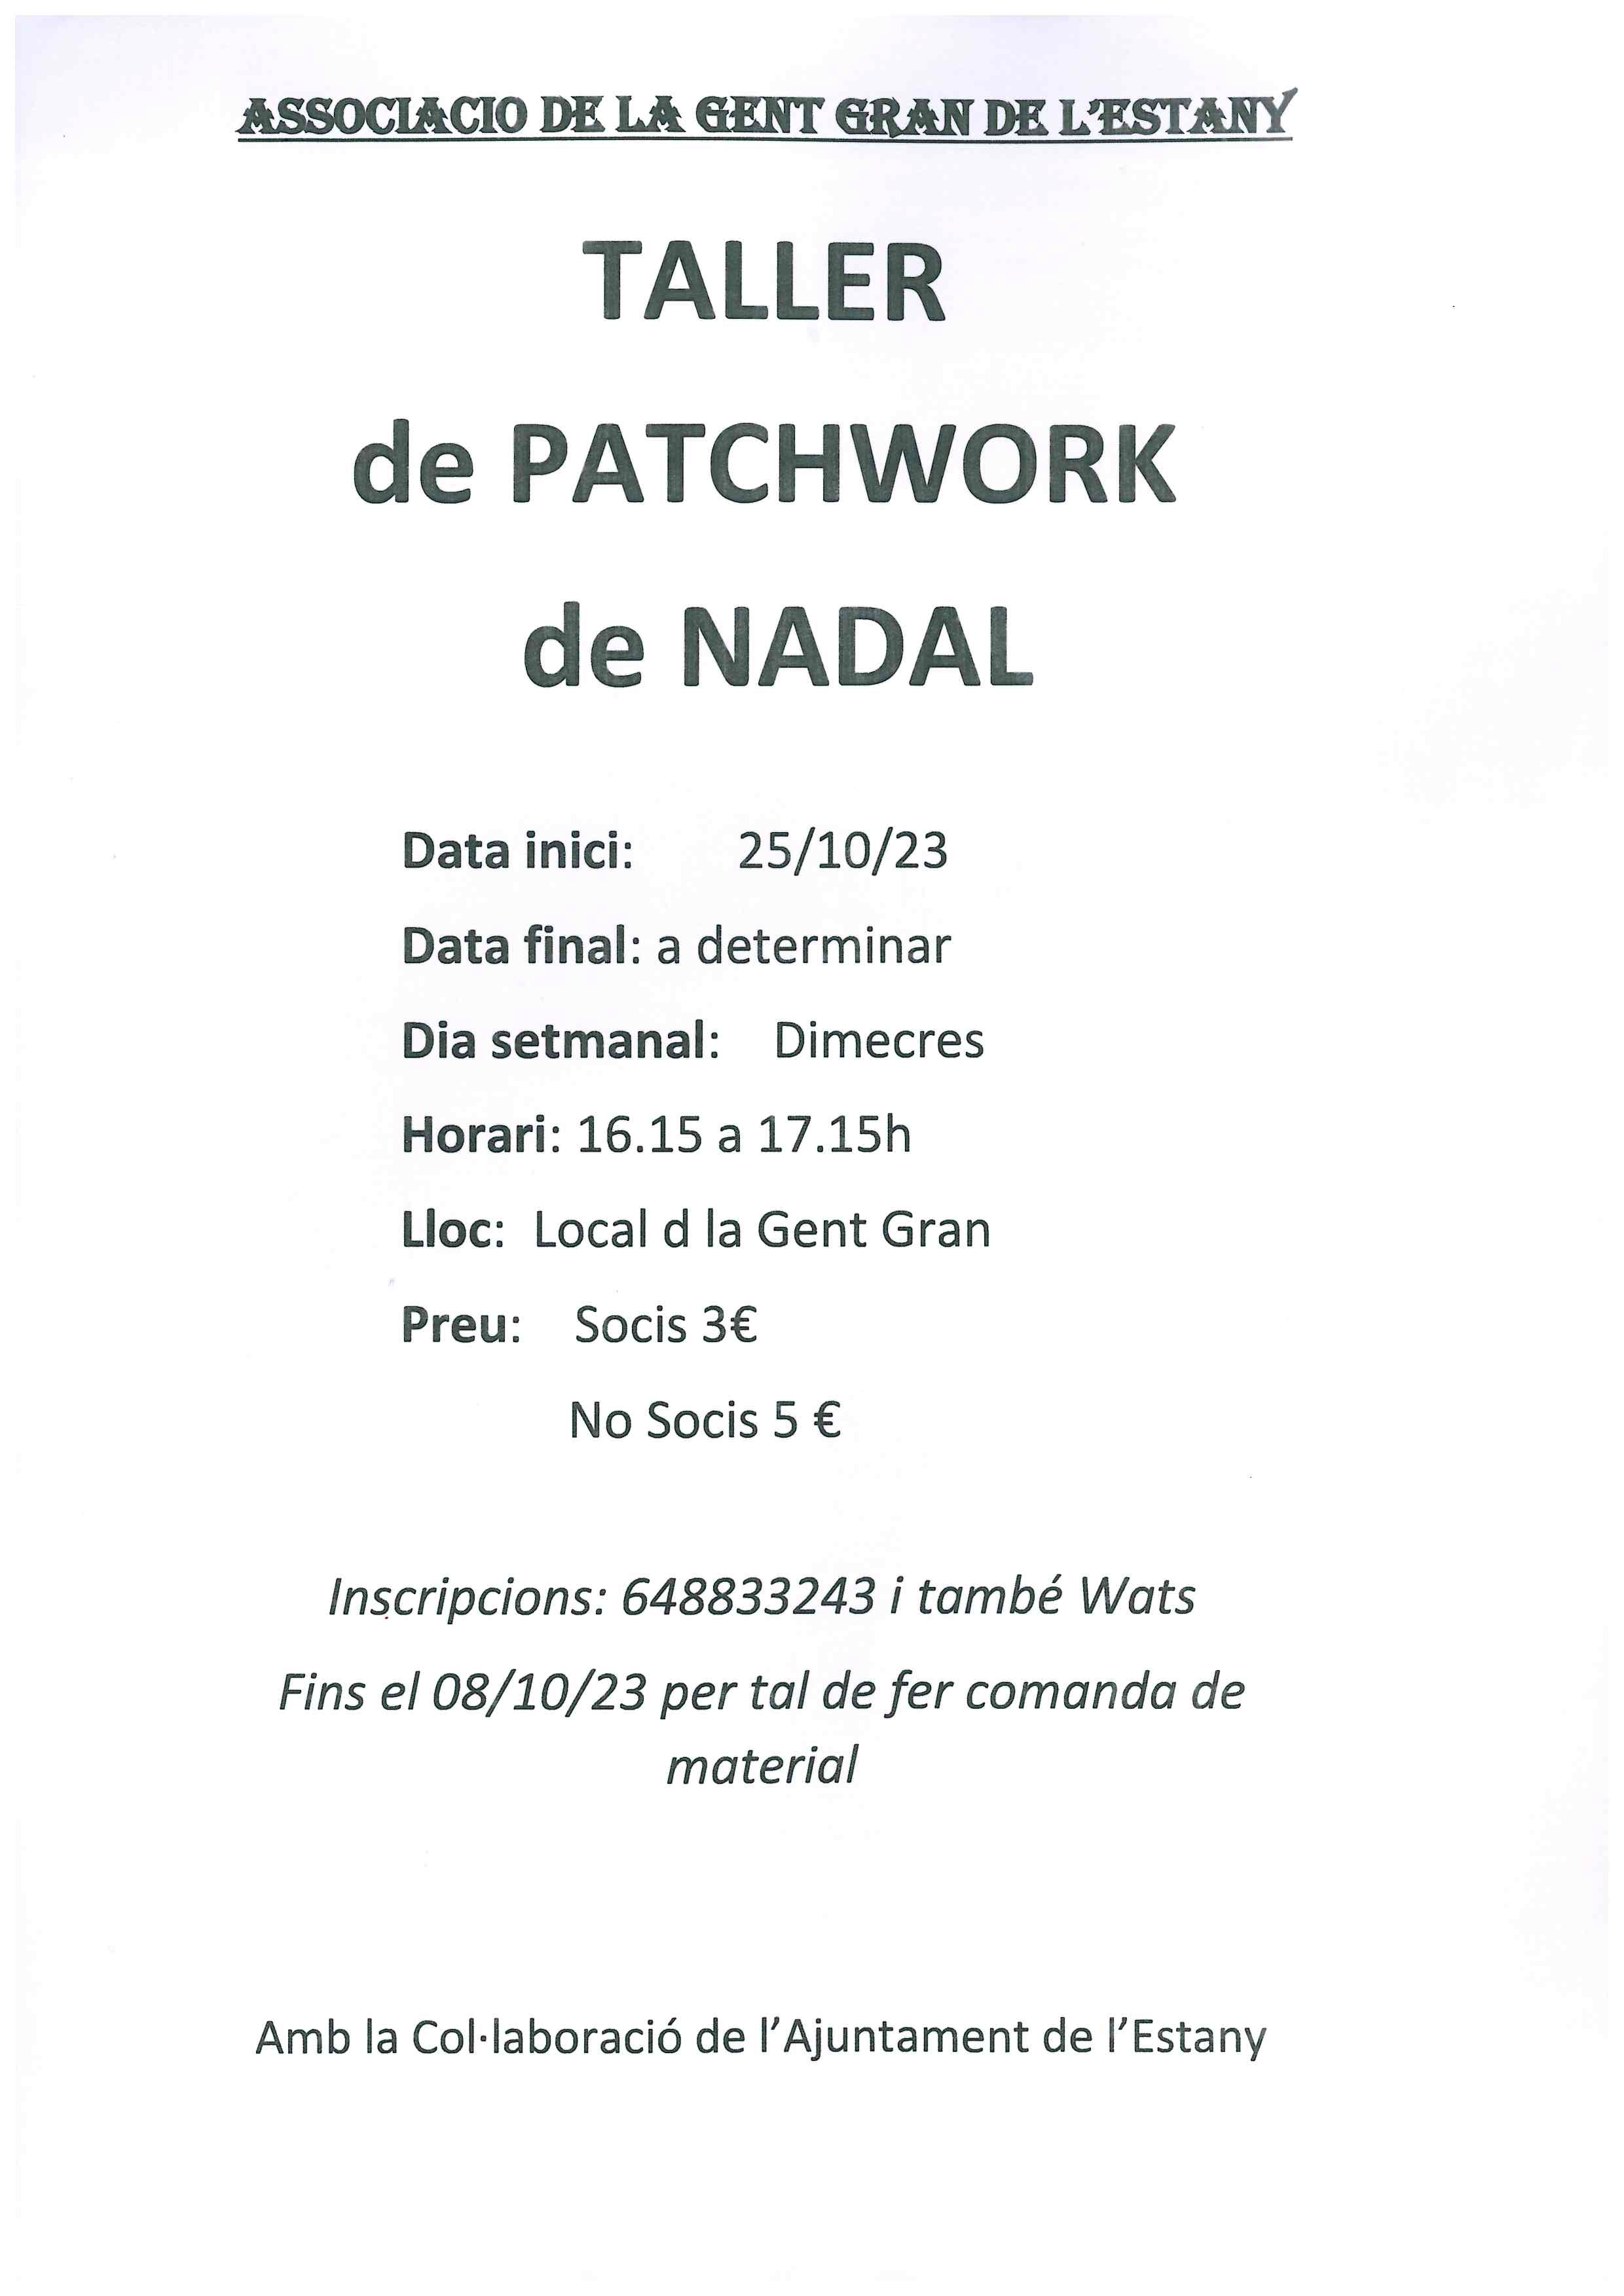 TALLER DE PATCHWORK DE NADAL